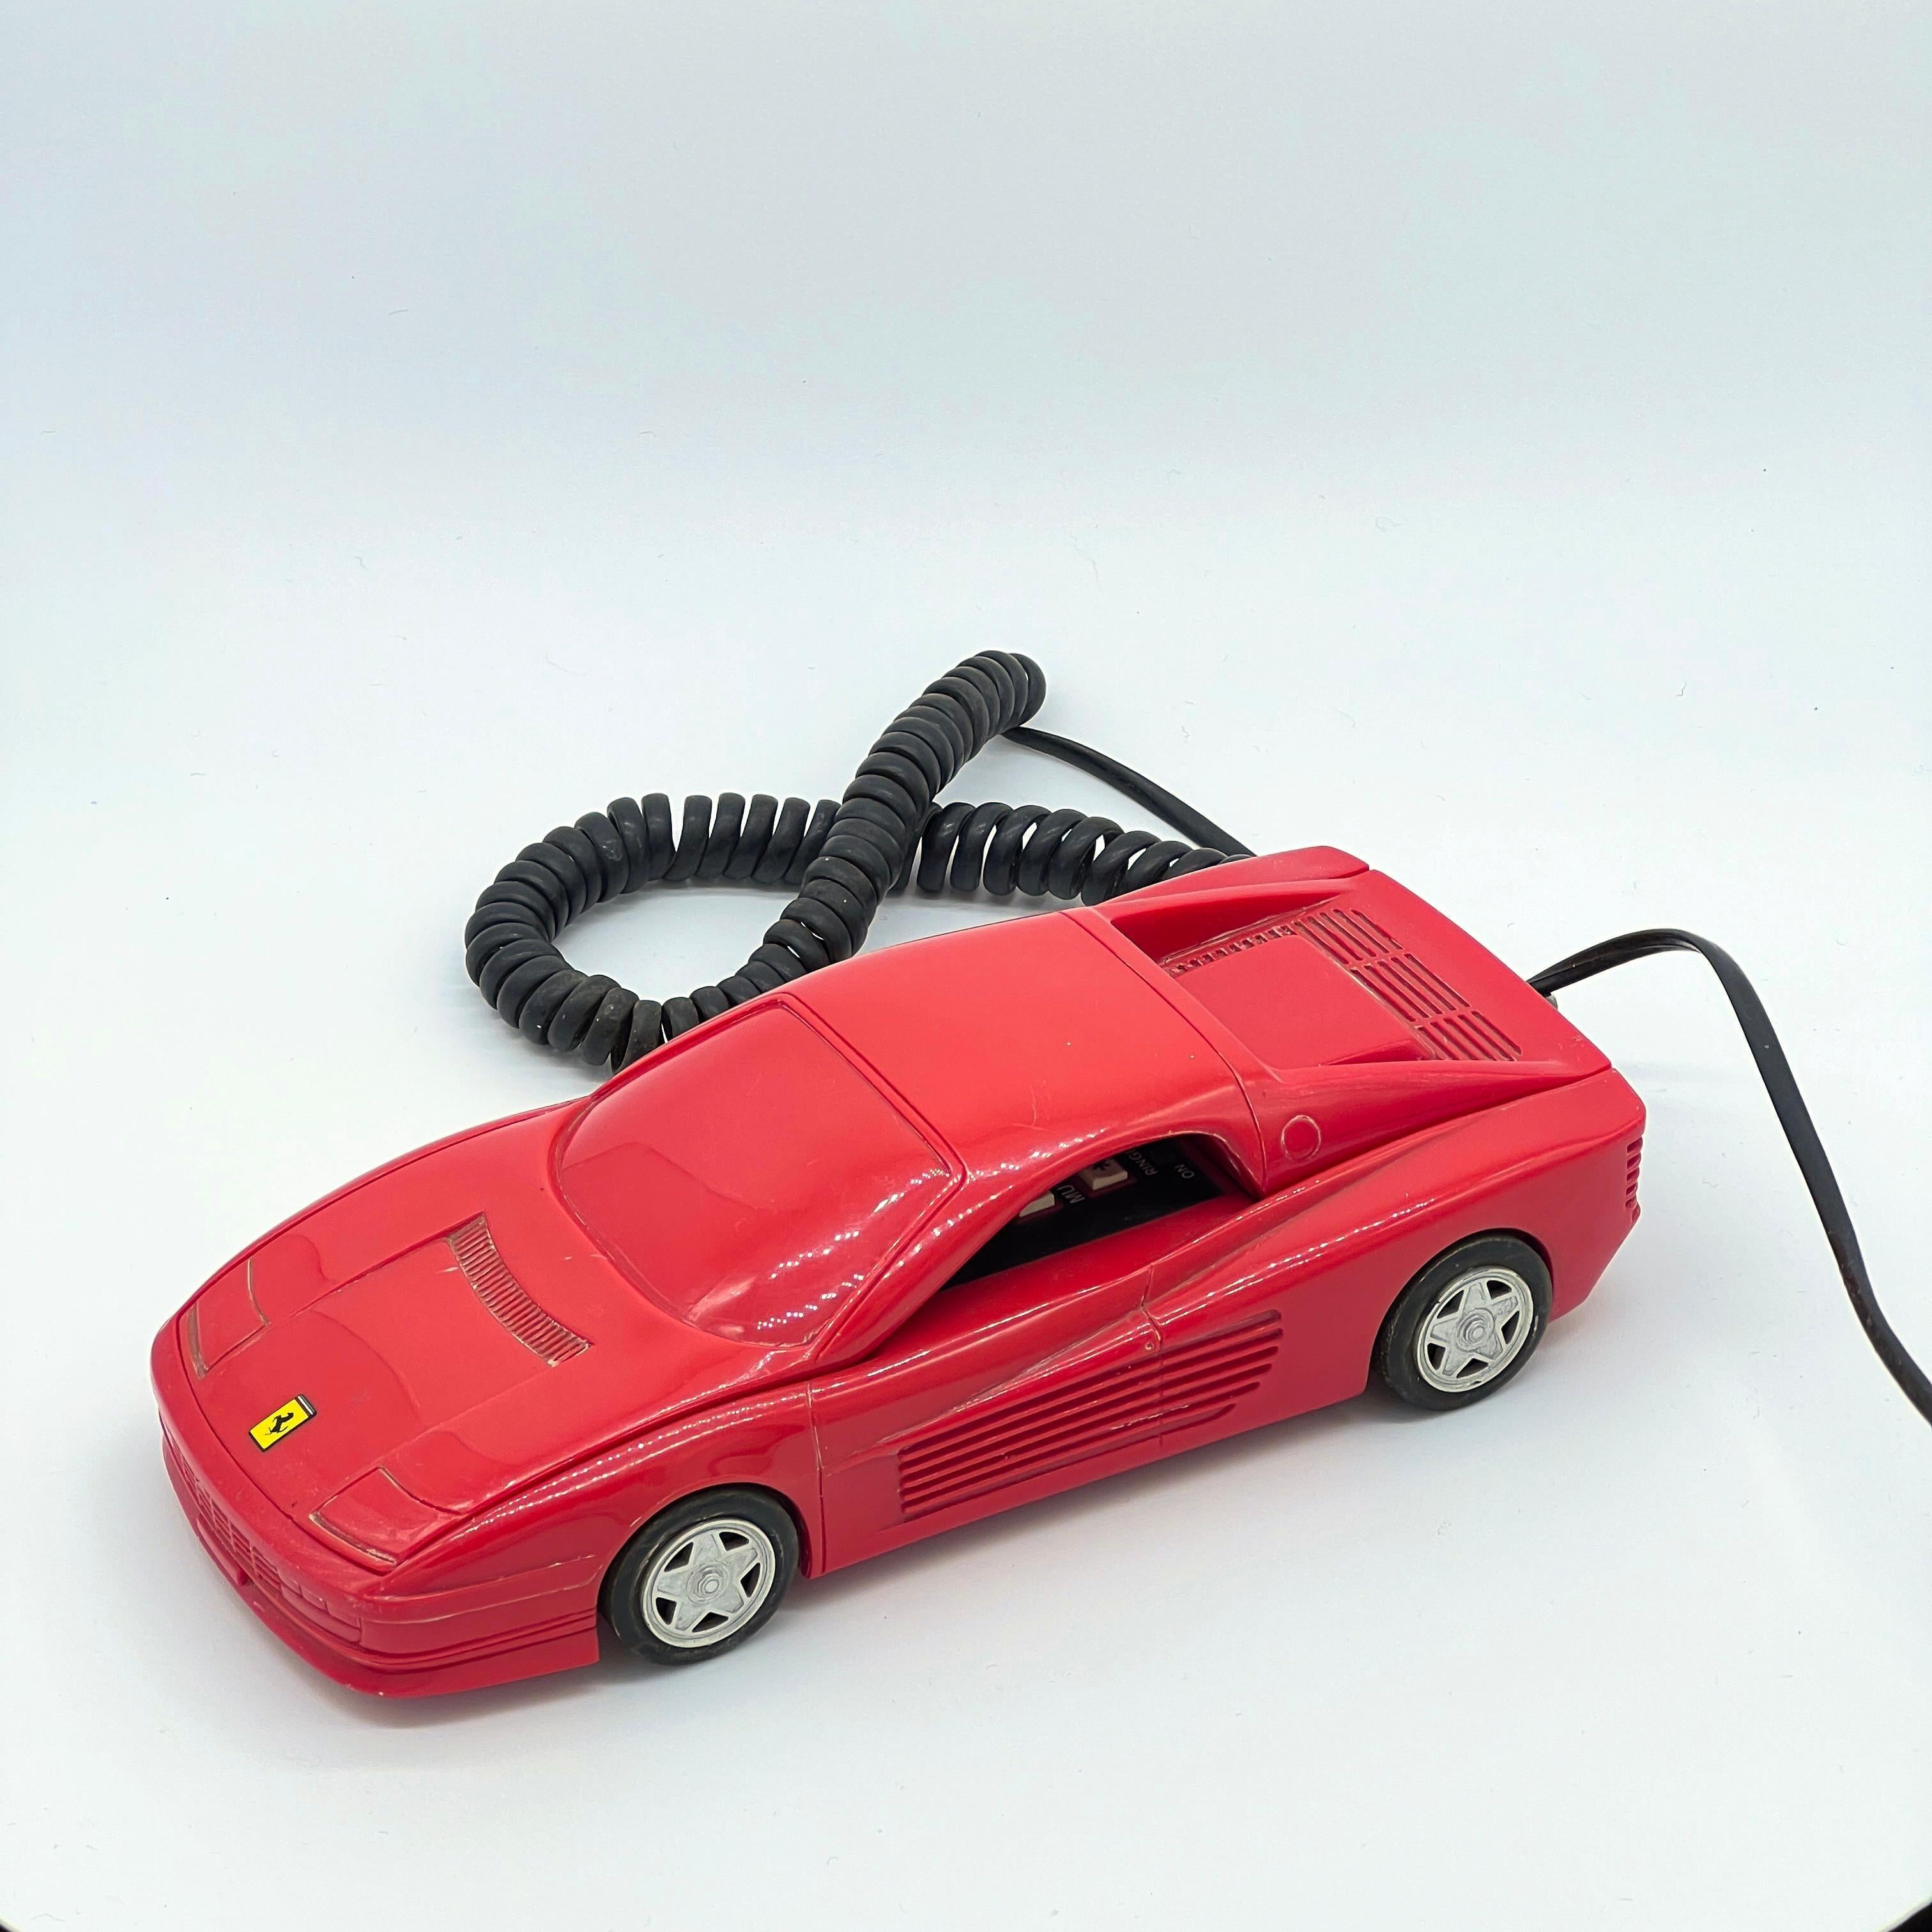 Seltenes Ferrari-Telefon / Dekoratives Objekt / Limitierte Auflage aus den 80er Jahren

Er ist zwar nicht weiß, aber Miami Vice-Vibes sind mit diesem lustigen und seltenen 